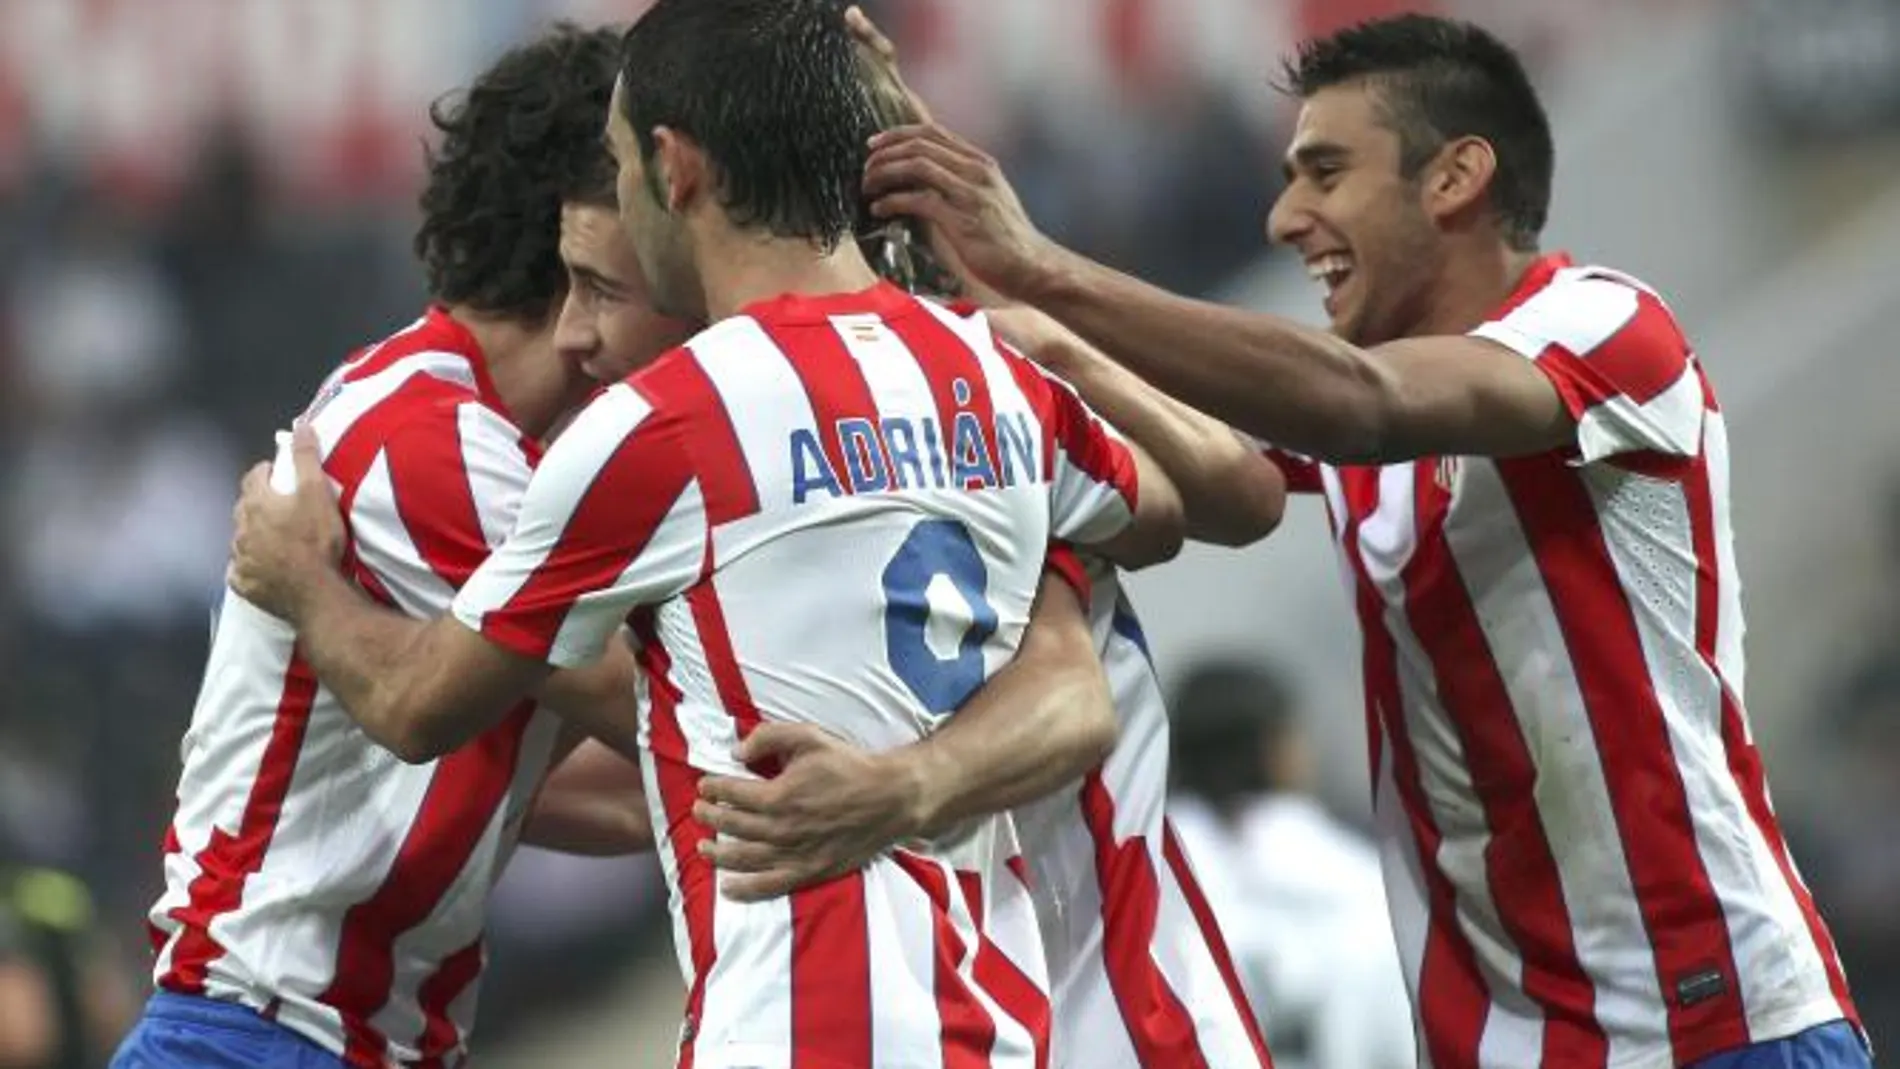 Los jugadores del Atlético de Madrid celebran uno de los goles ante el Vitoria